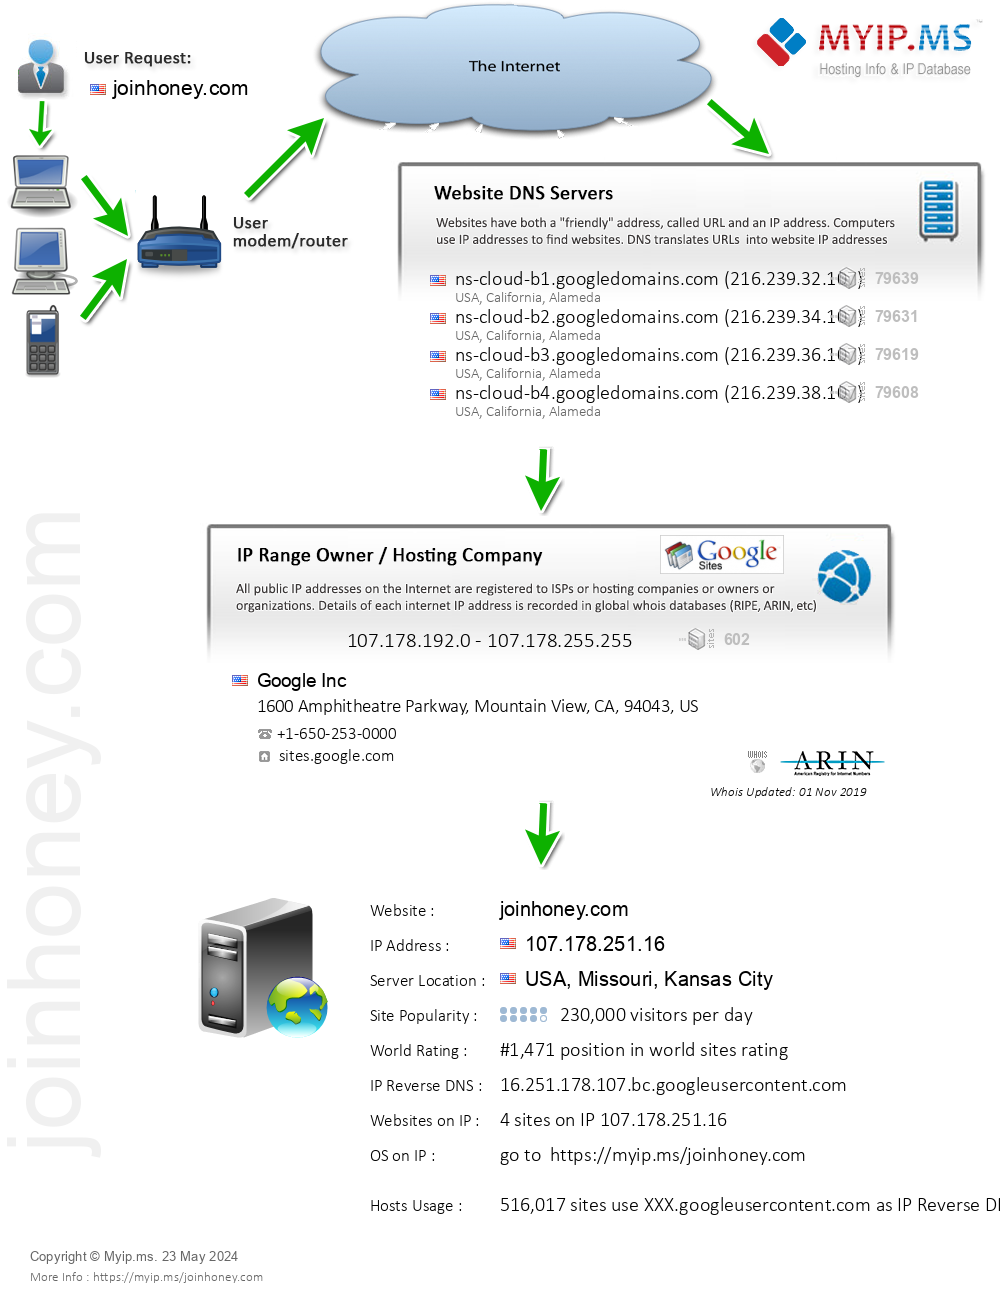 Joinhoney.com - Website Hosting Visual IP Diagram